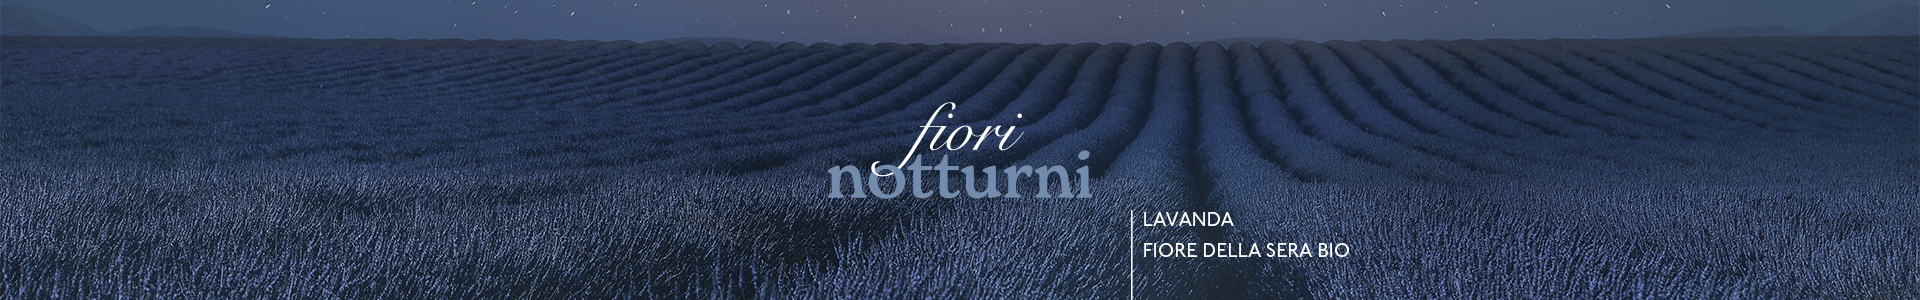 Fiori-Notturni-1920x300-010921.jpg